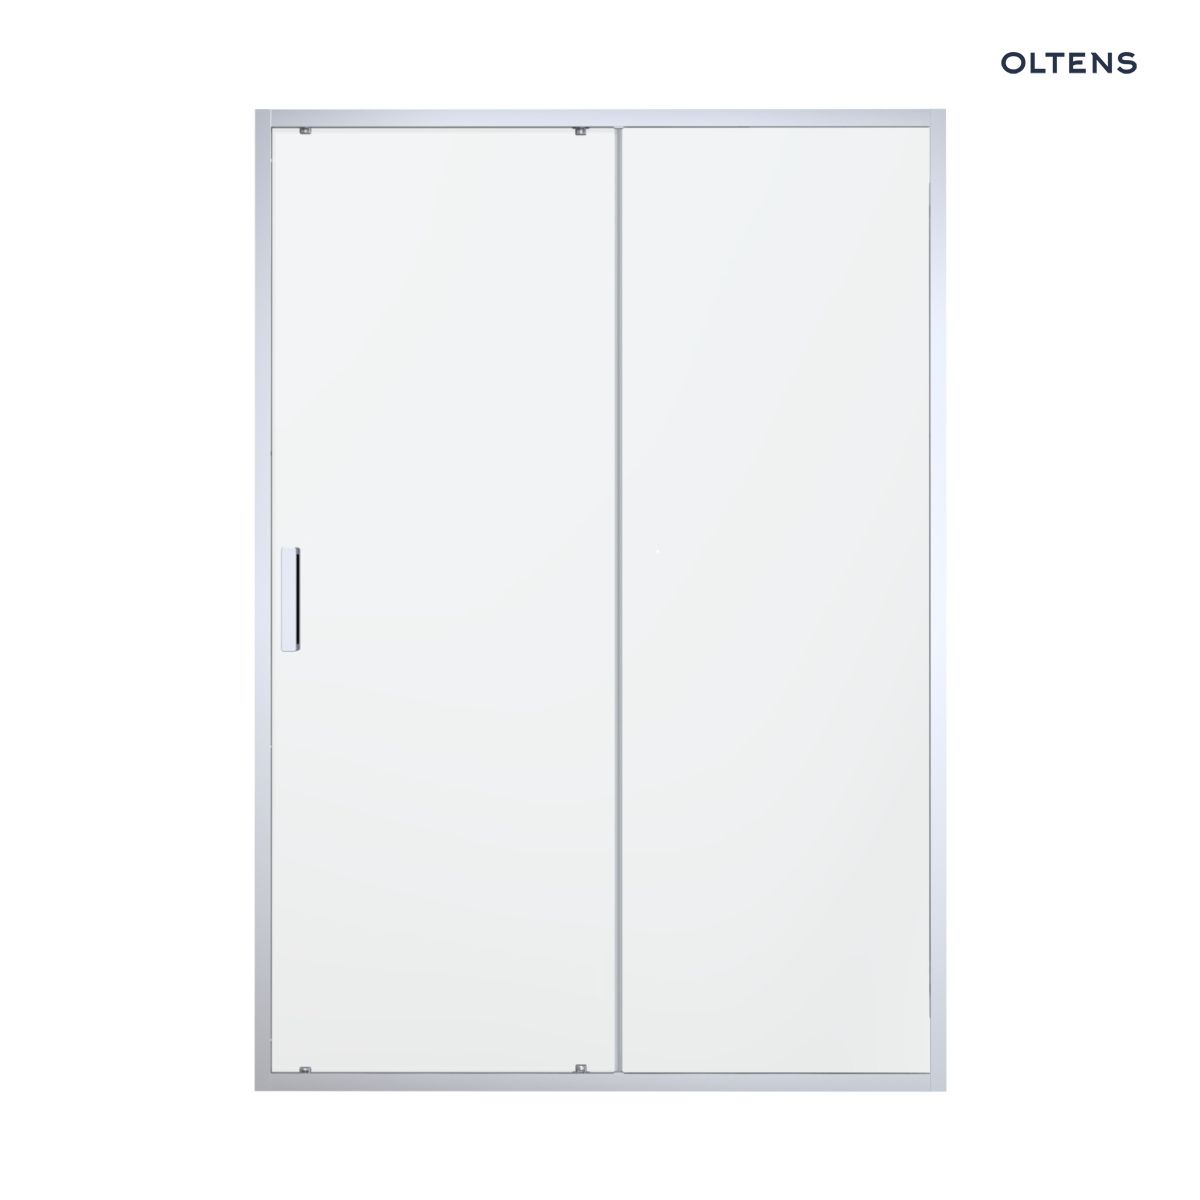 Oltens Fulla drzwi prysznicowe 130 cm wnękowe chrom błyszczący/szkło przezroczyste